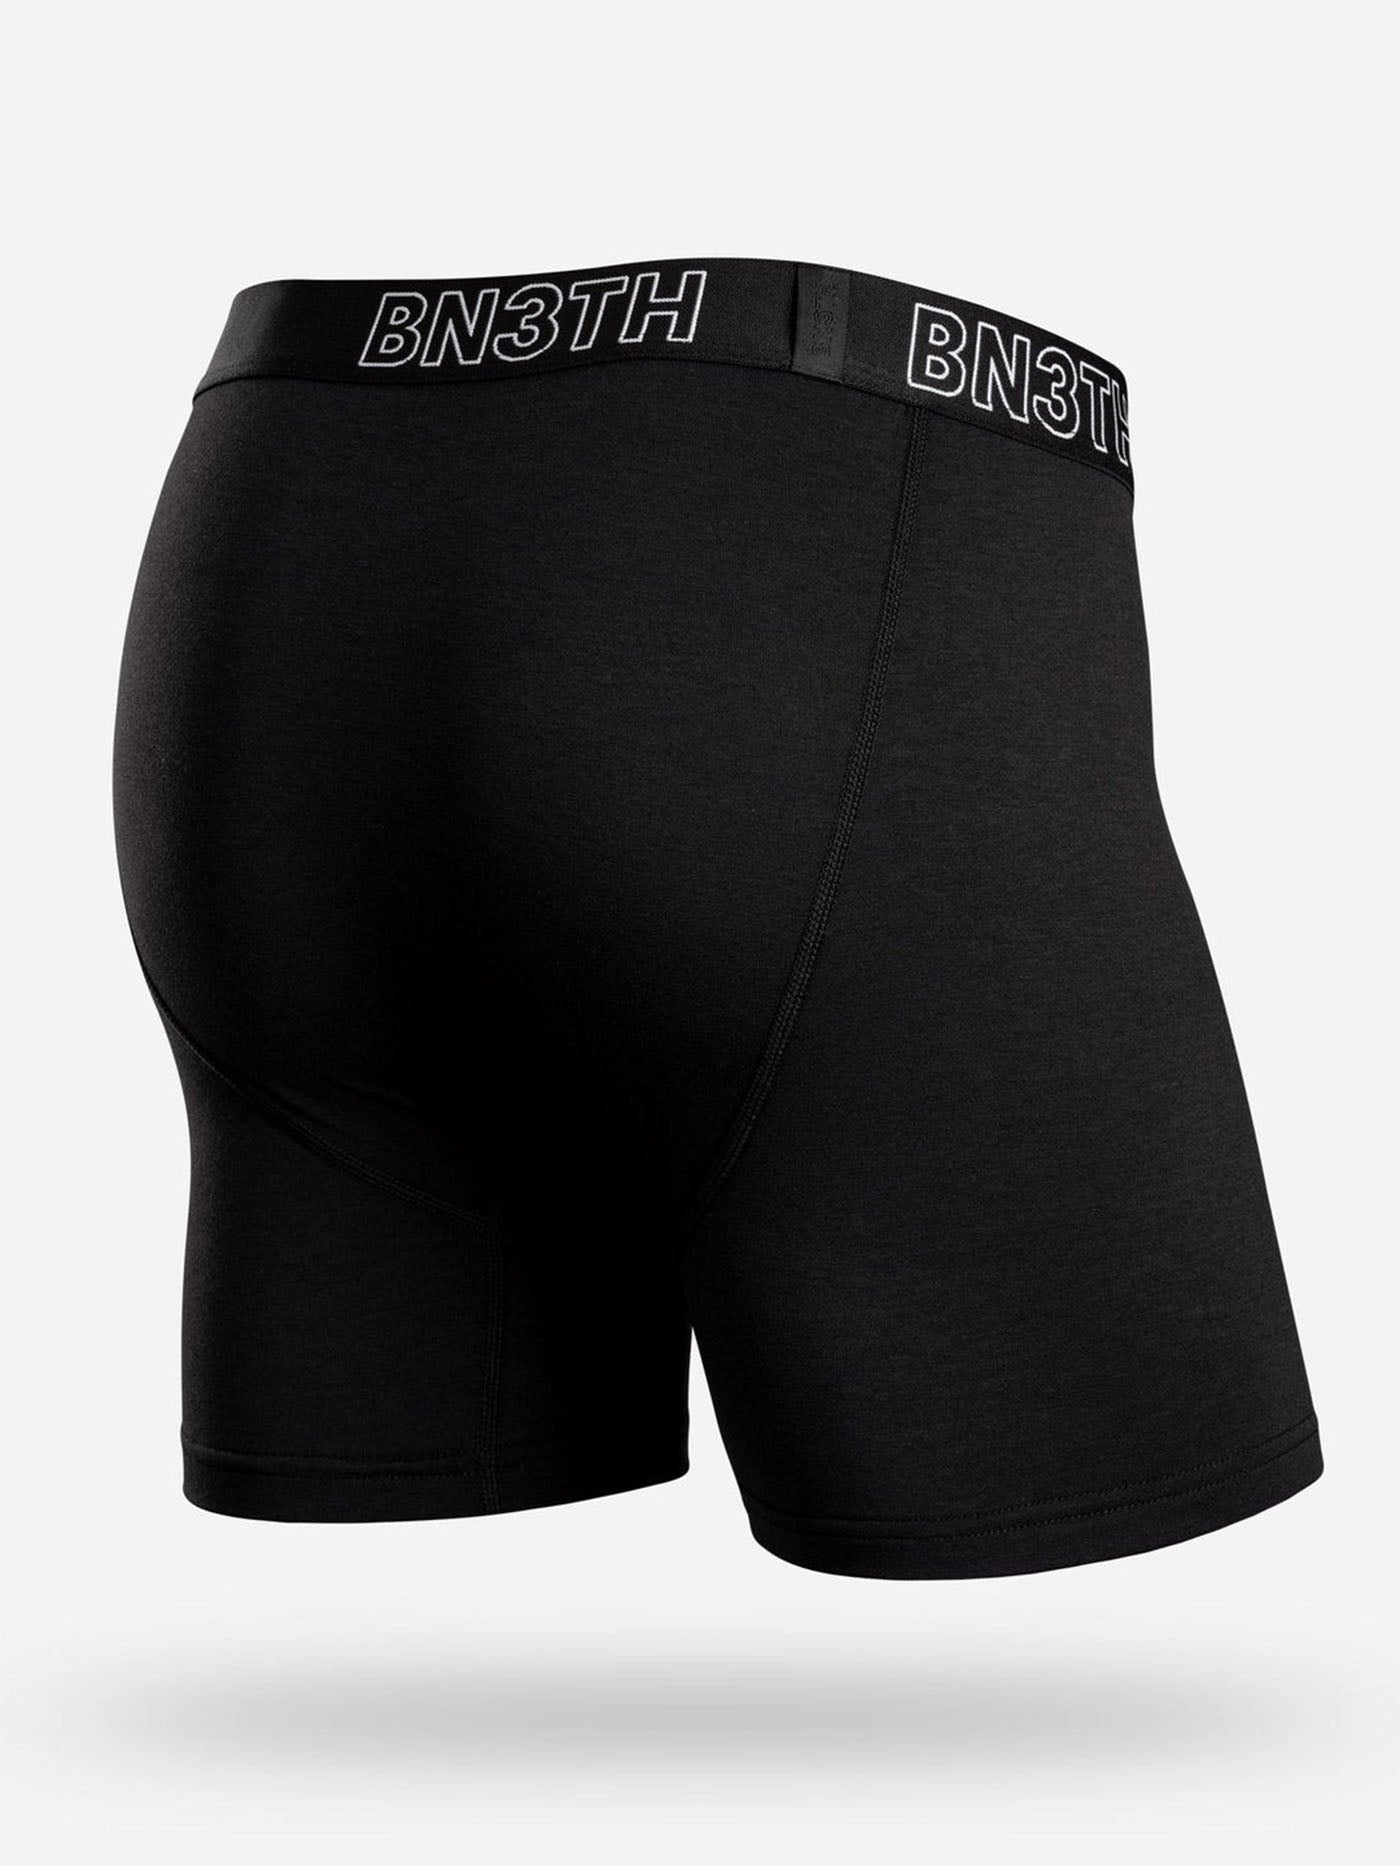 Inception Boxer Brief: Black  BN3TH Underwear –